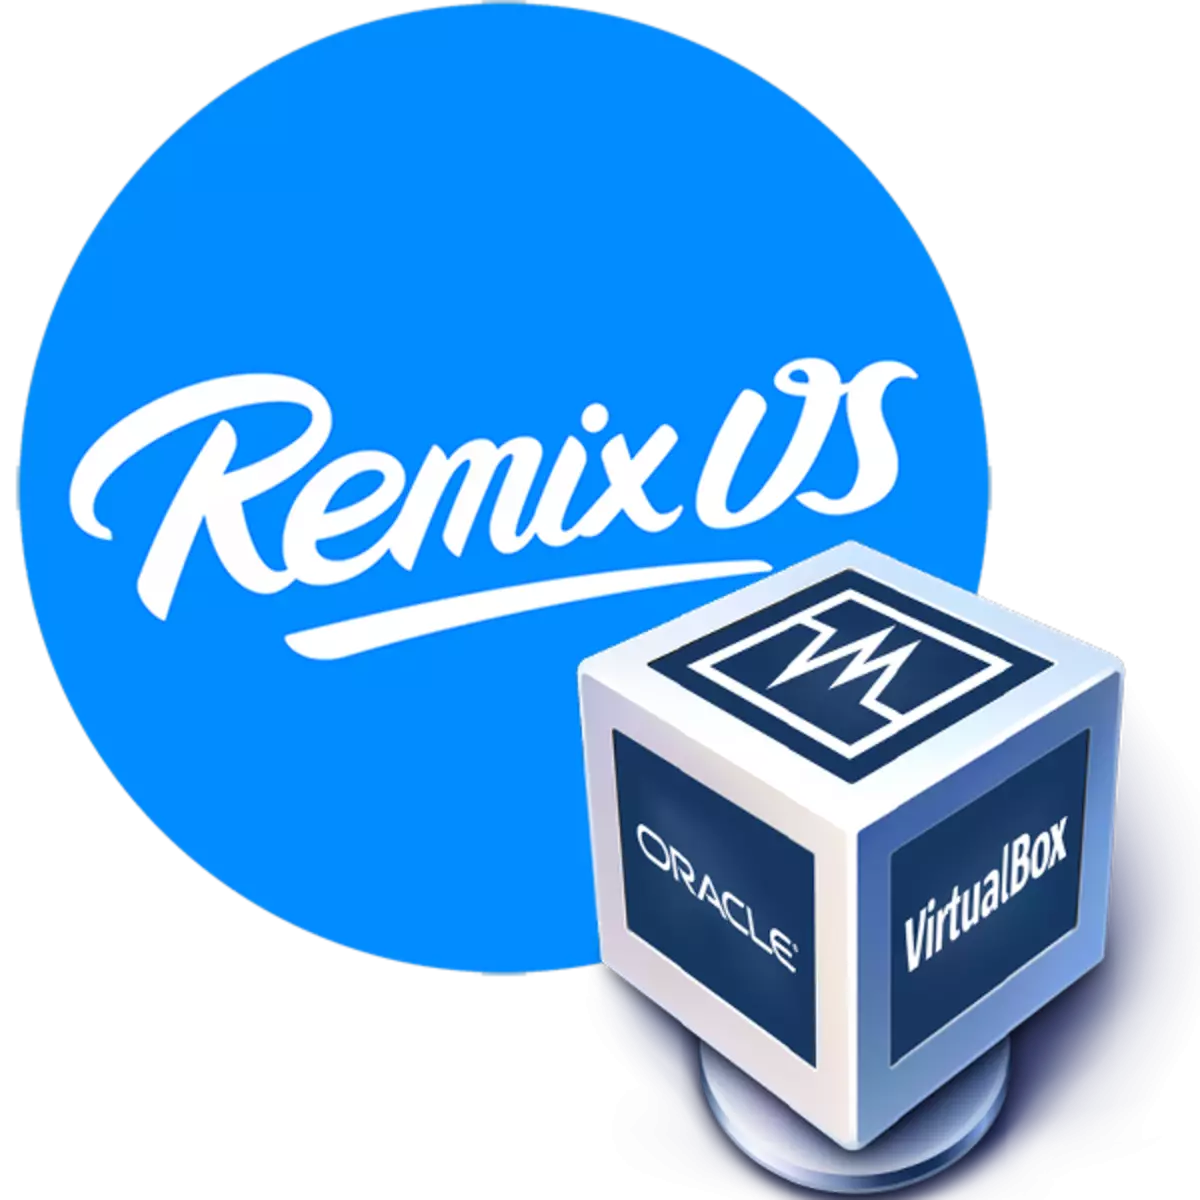 Suiteáil REMIX OS i VirtualBox